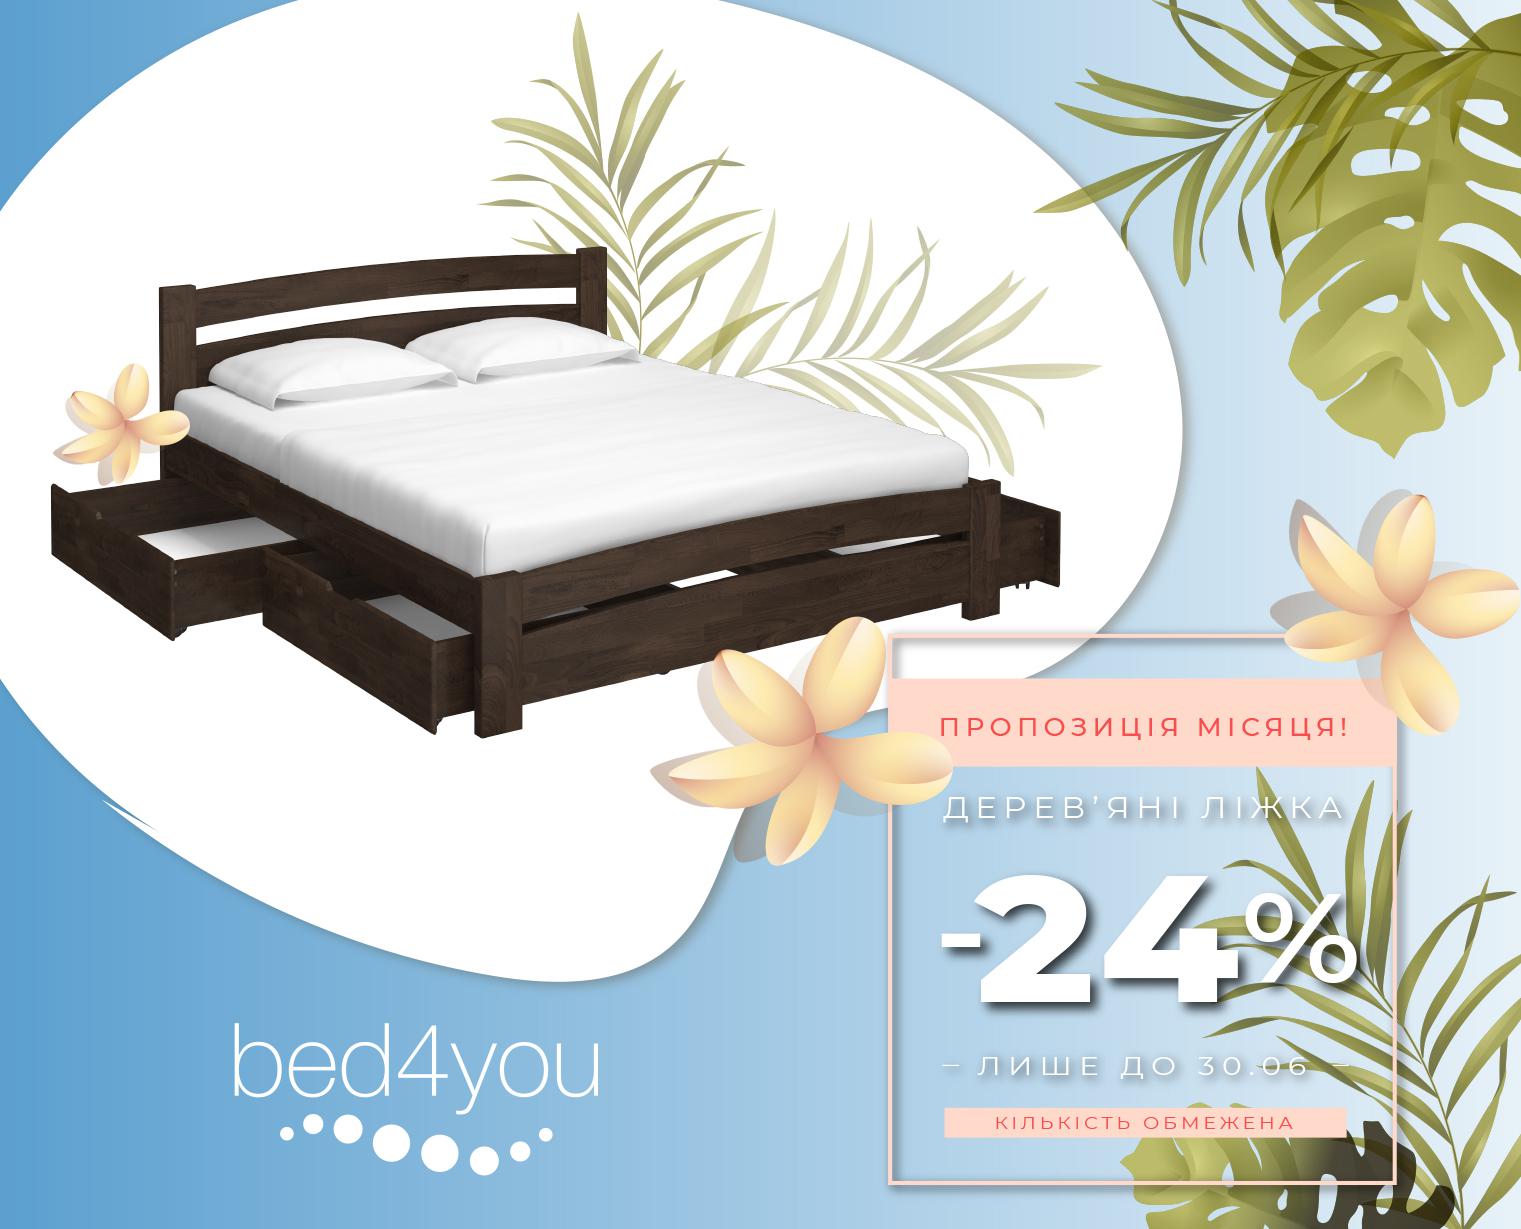 Оголошуємо небувалу знижку 24% на наші найпопулярніші моделі дерев'яних ліжок!